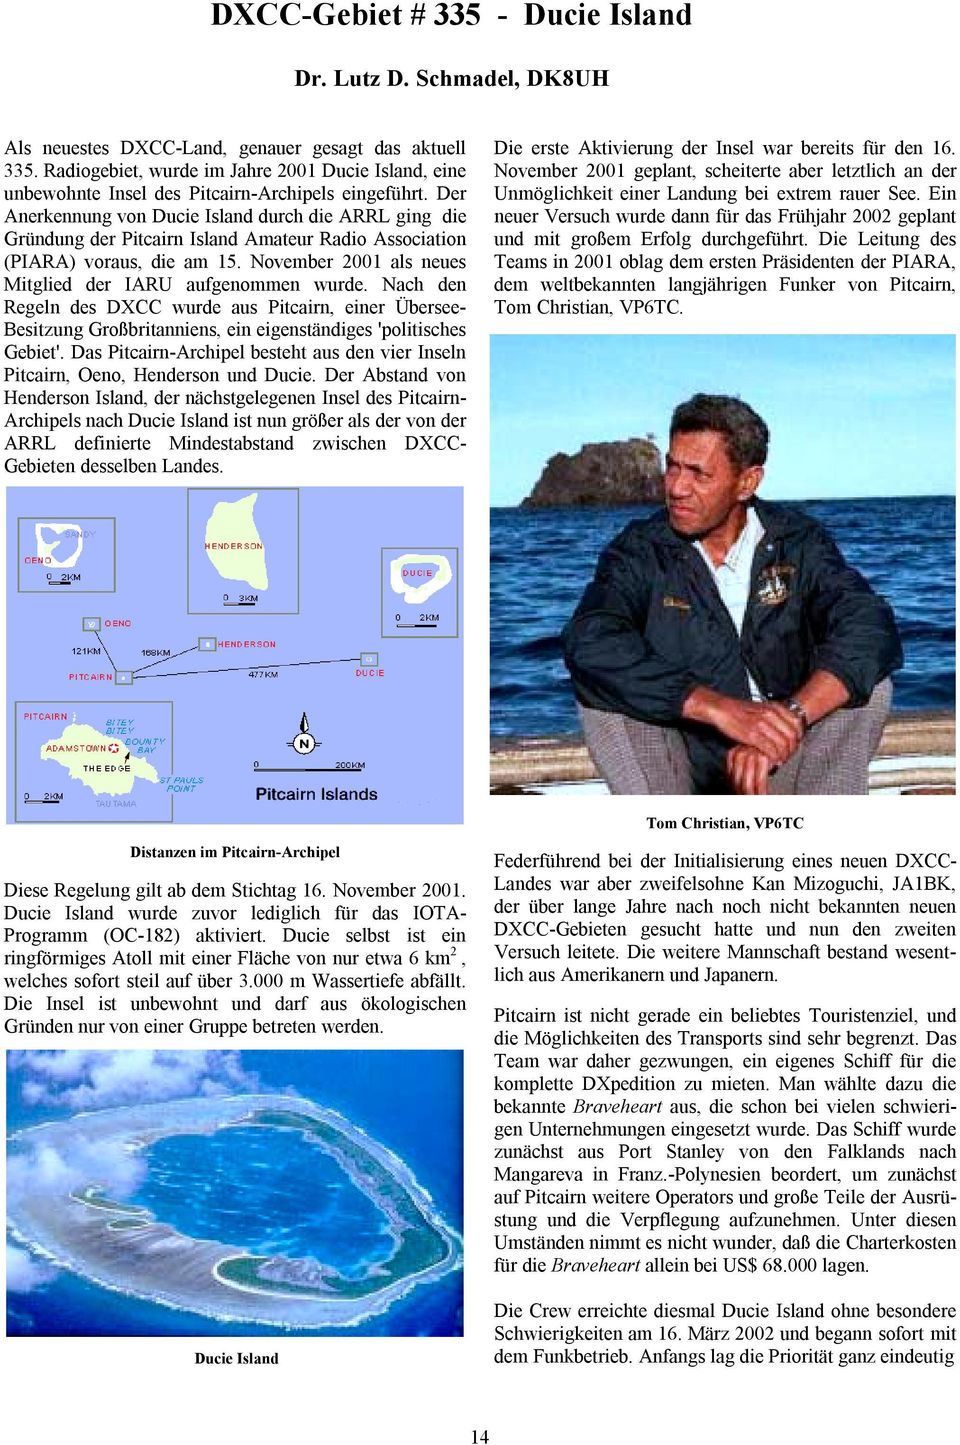 Der Anerkennung von Ducie Island durch die ARRL ging die Gründung der Pitcairn Island Amateur Radio Association (PIARA) voraus, die am 15. November 2001 als neues Mitglied der IARU aufgenommen wurde.